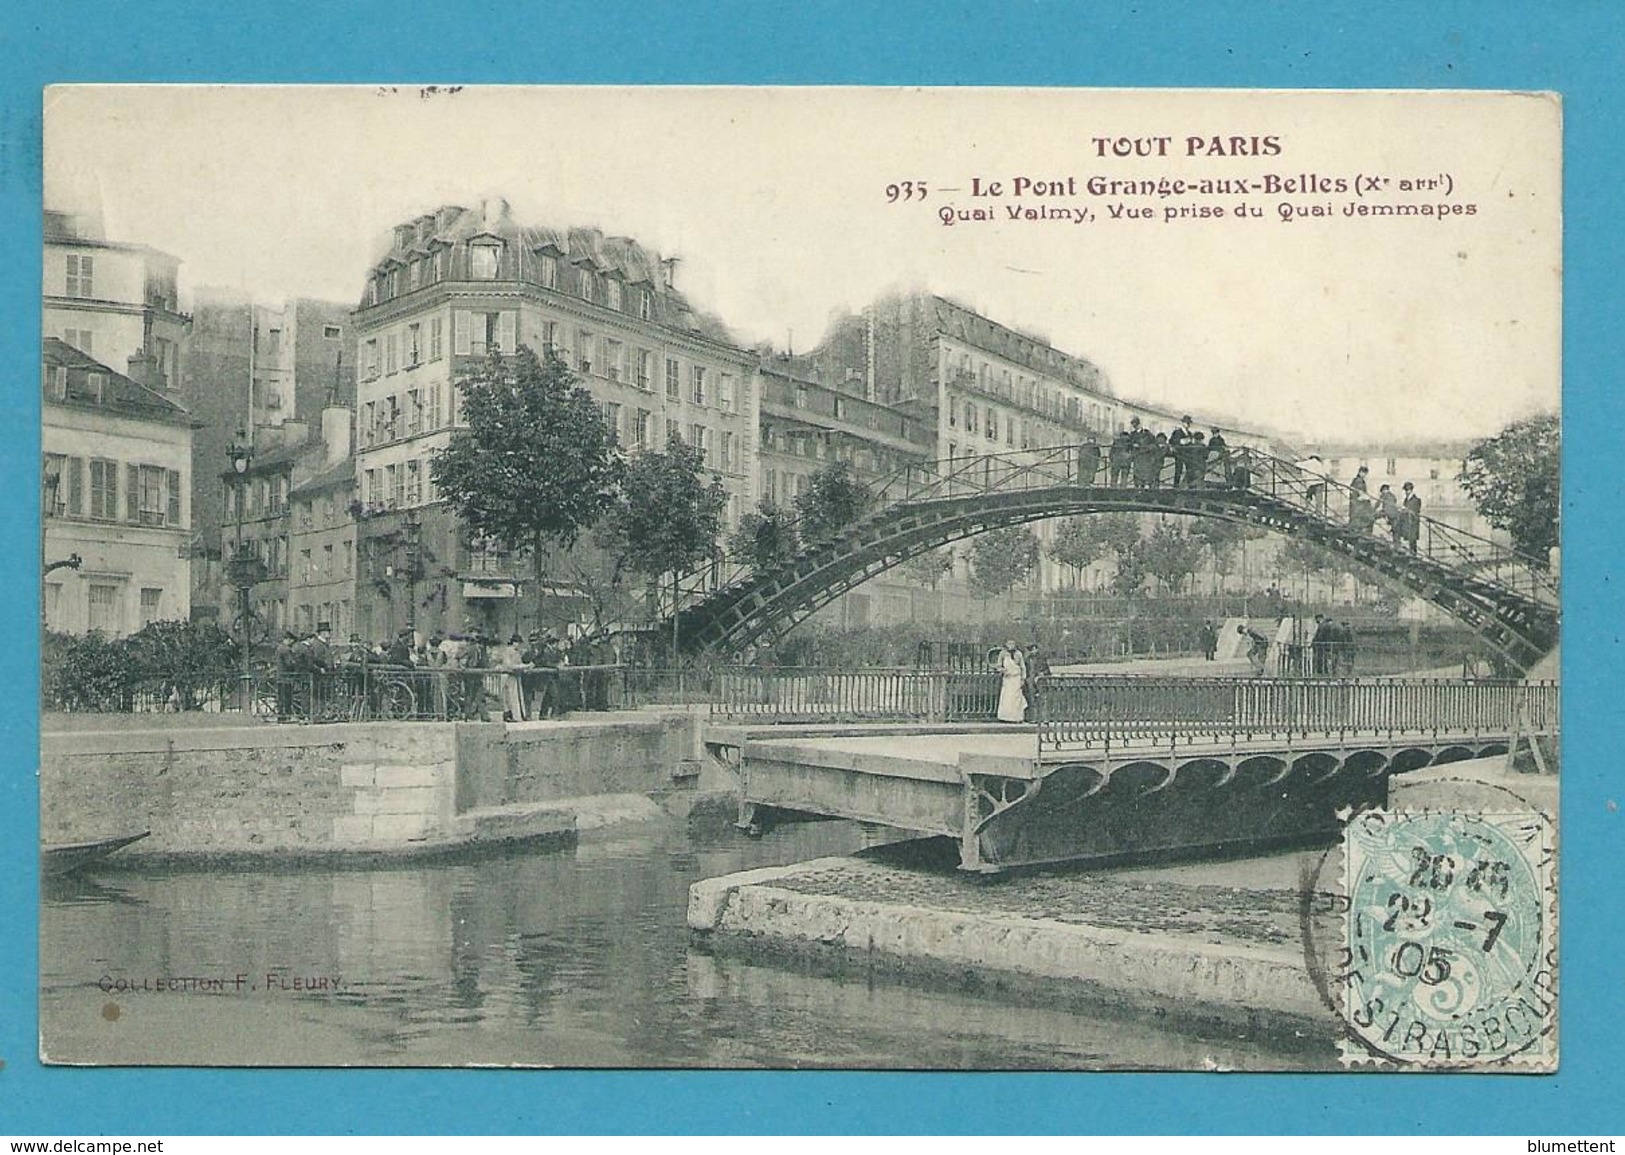 CPA TOUT PARIS 935 - Le Pont Grange-aux-Belles Quai Valmy  (Xème Arrt.) Edition FLEURY - Paris (10)